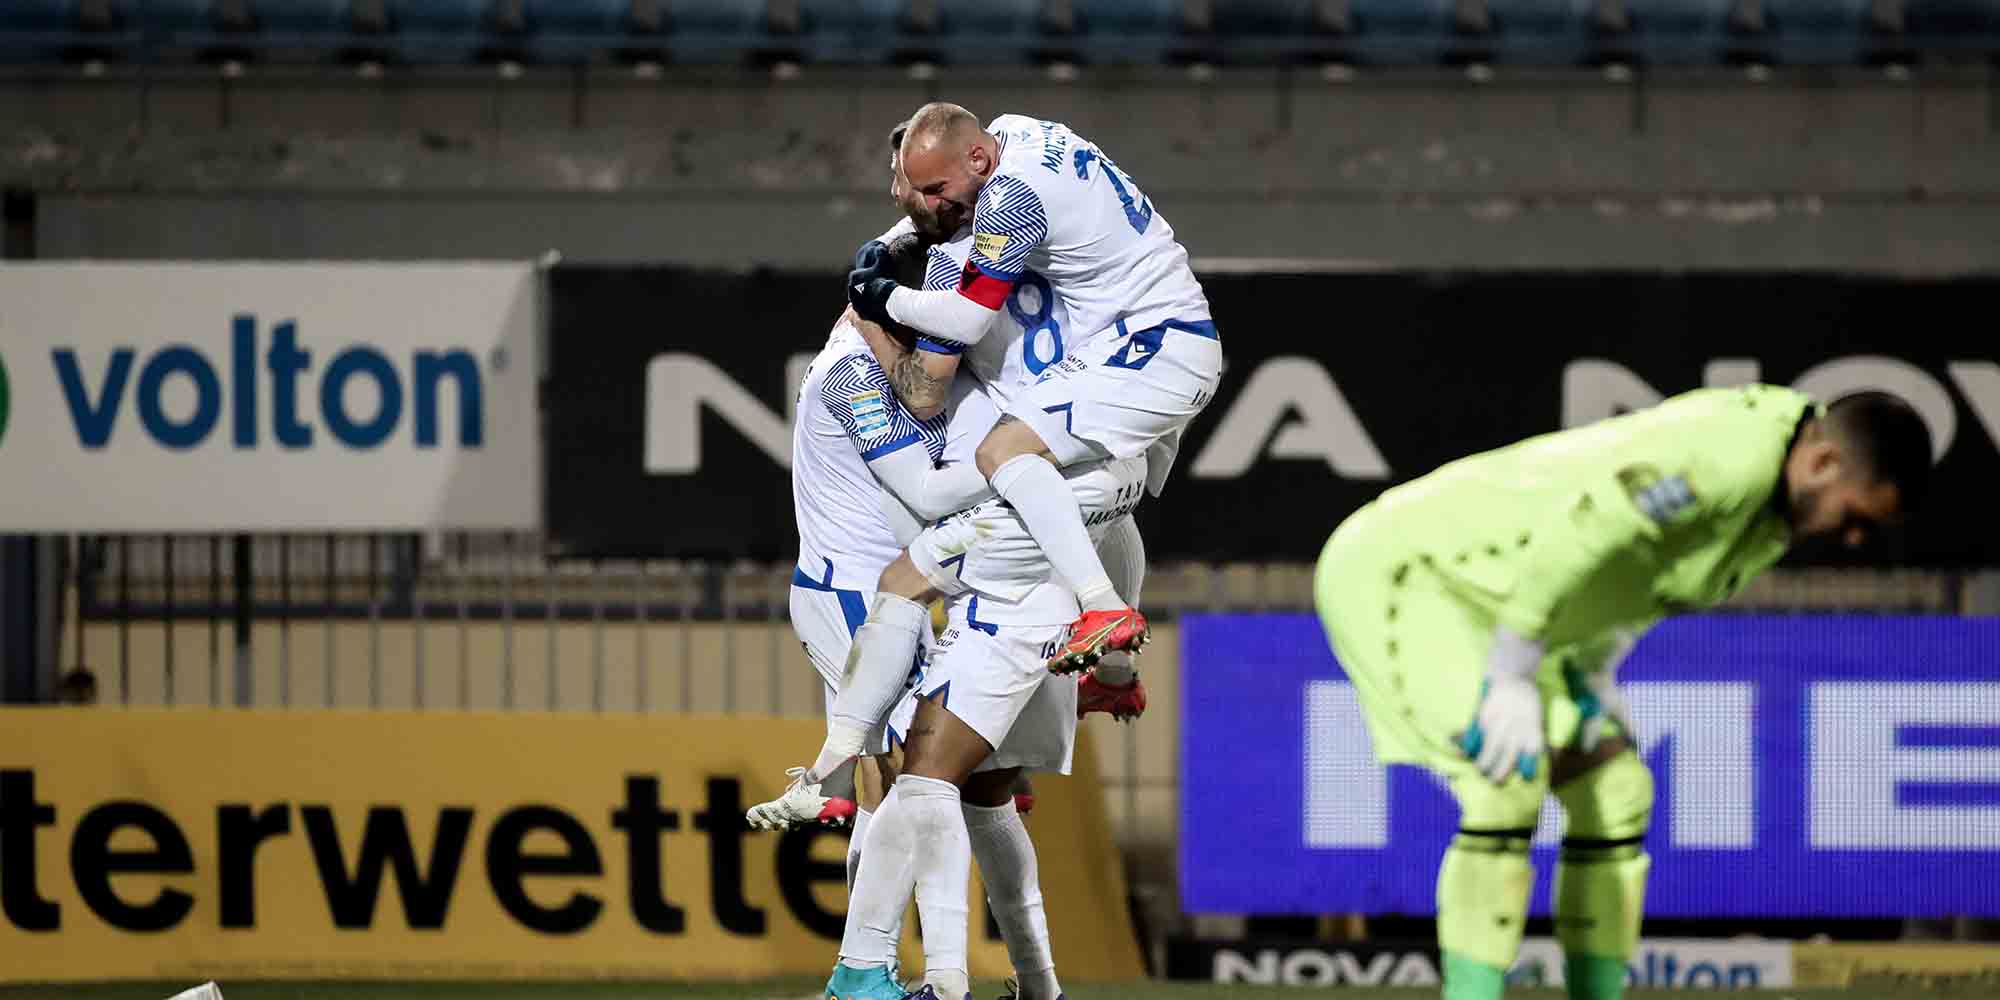 Αστέρας Τρίπολης - Ιωνικός 2-3 Super League